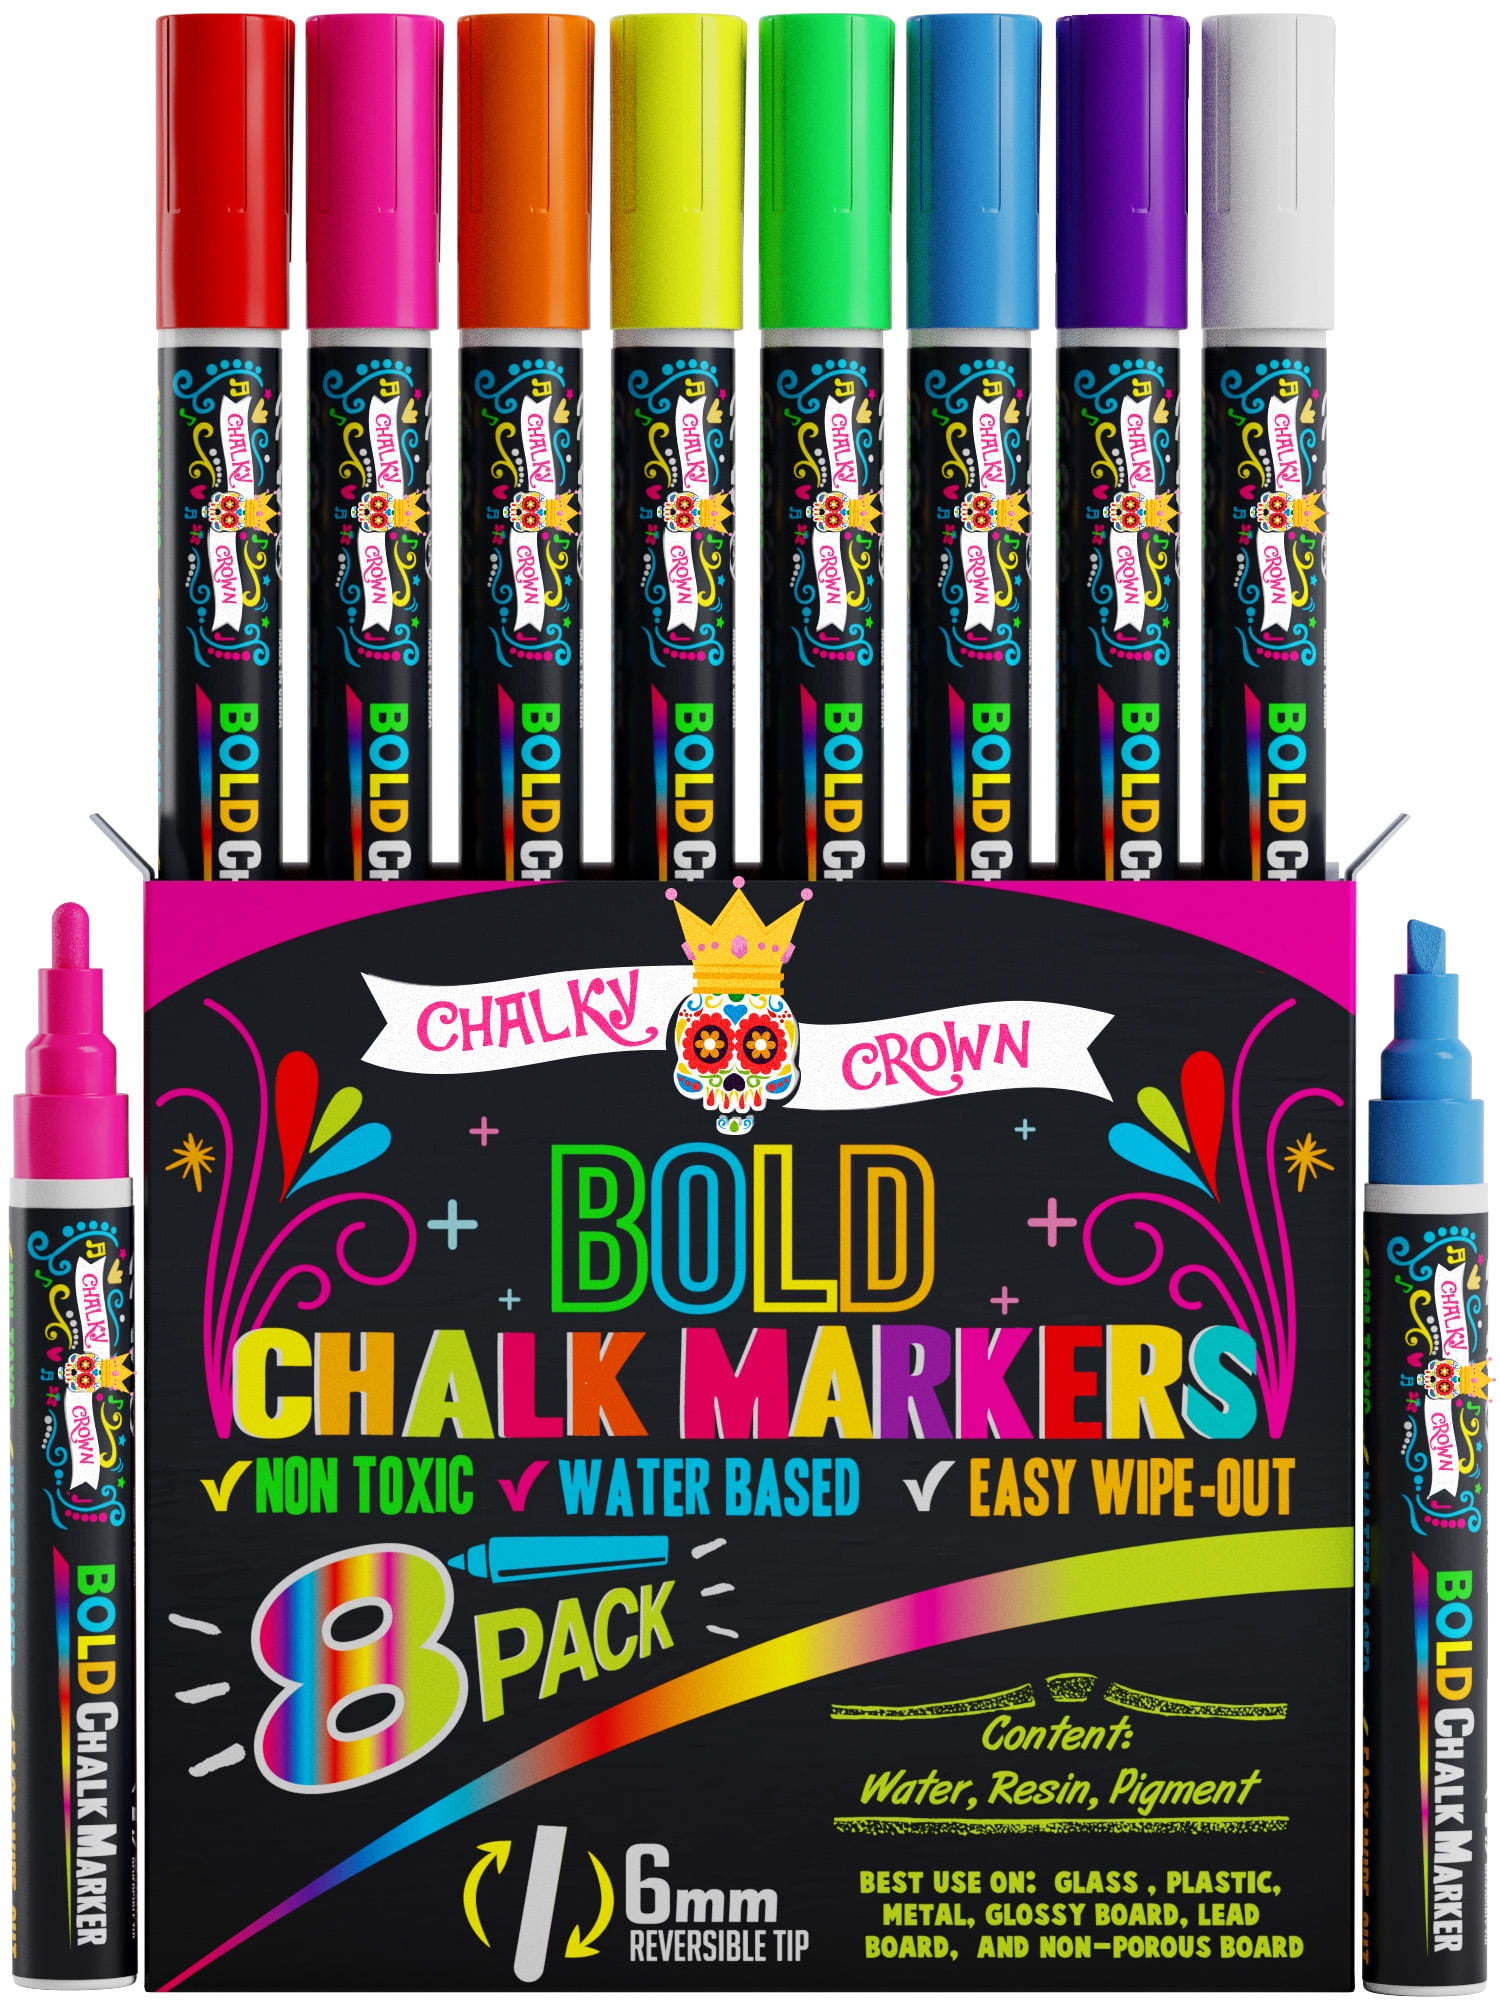 Liquid Chalk Markers for Blackboards (10 Neon Colors) - Chalkboard